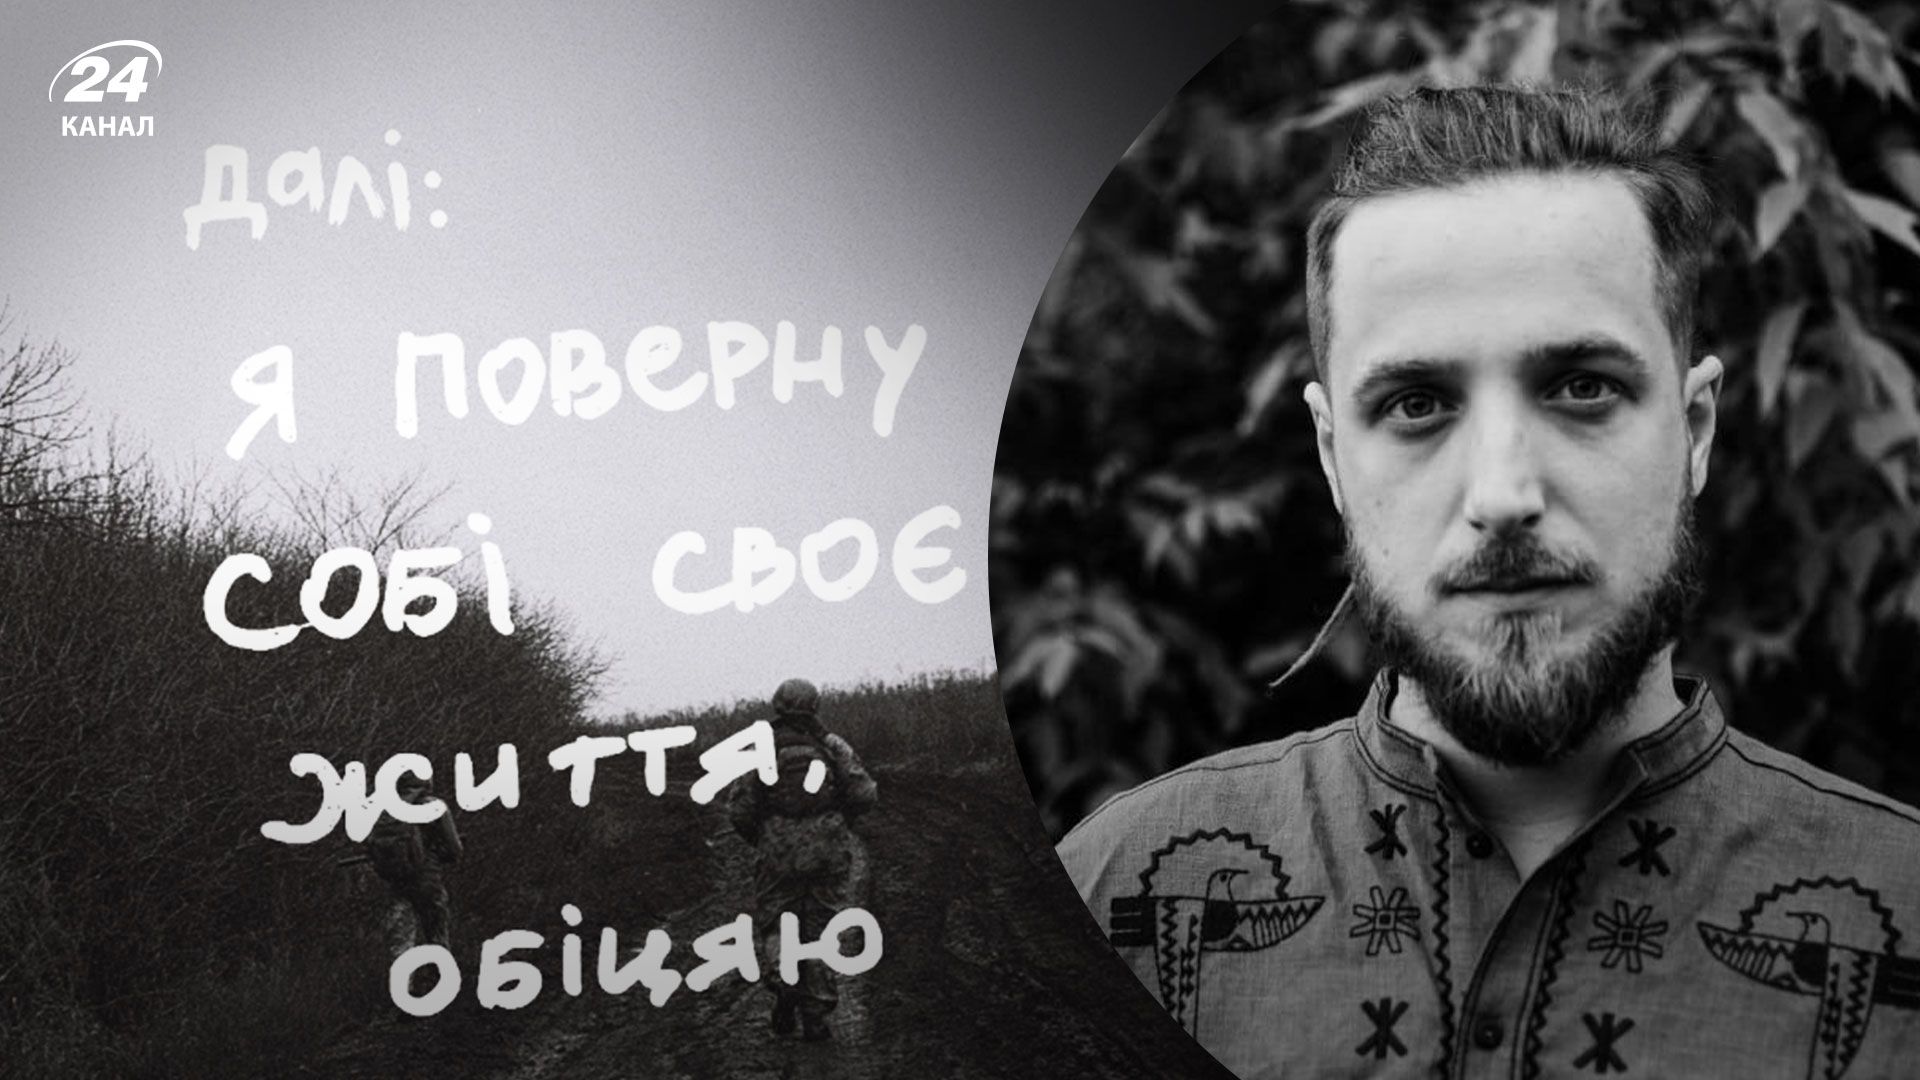 Это то, что невозможно убить: в Киеве пройдет фотовыставка памяти павшего Максима "Дали" Кривцова - 24 Канал